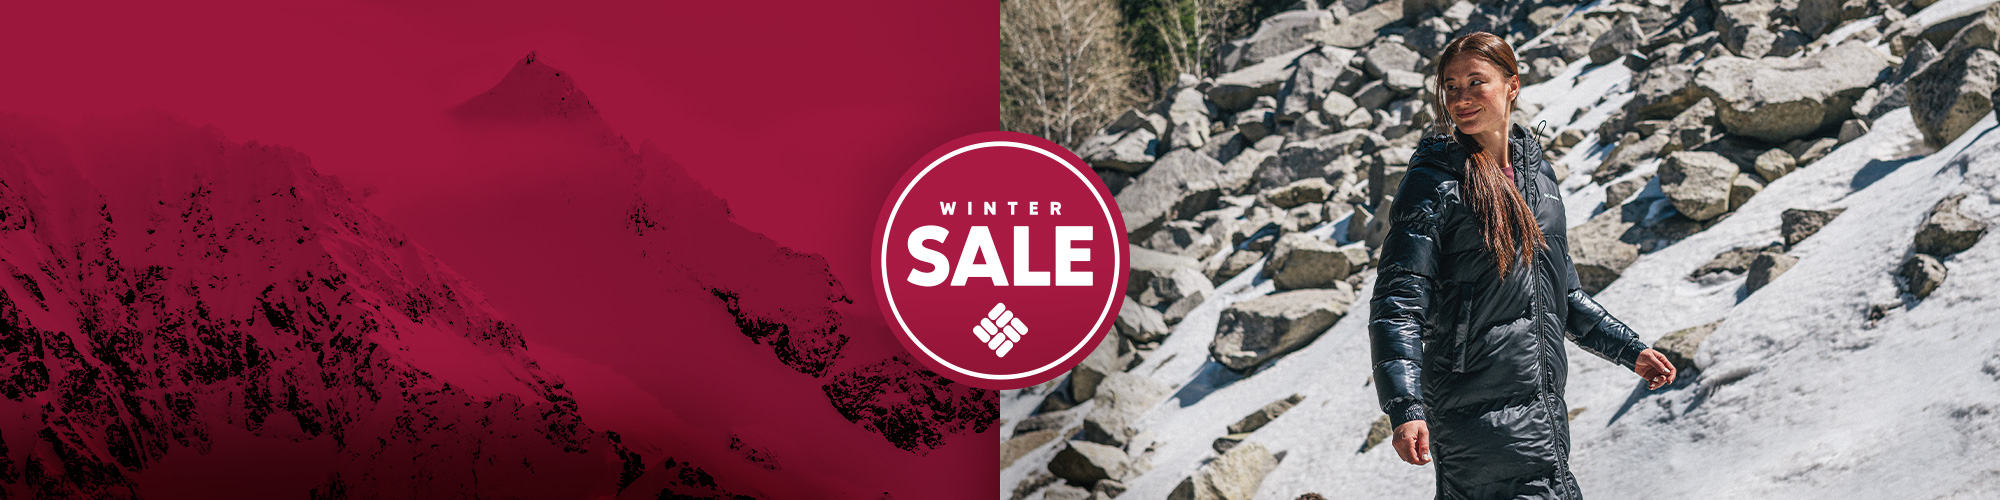 Winter sale logo. Snowy mountain scene. 